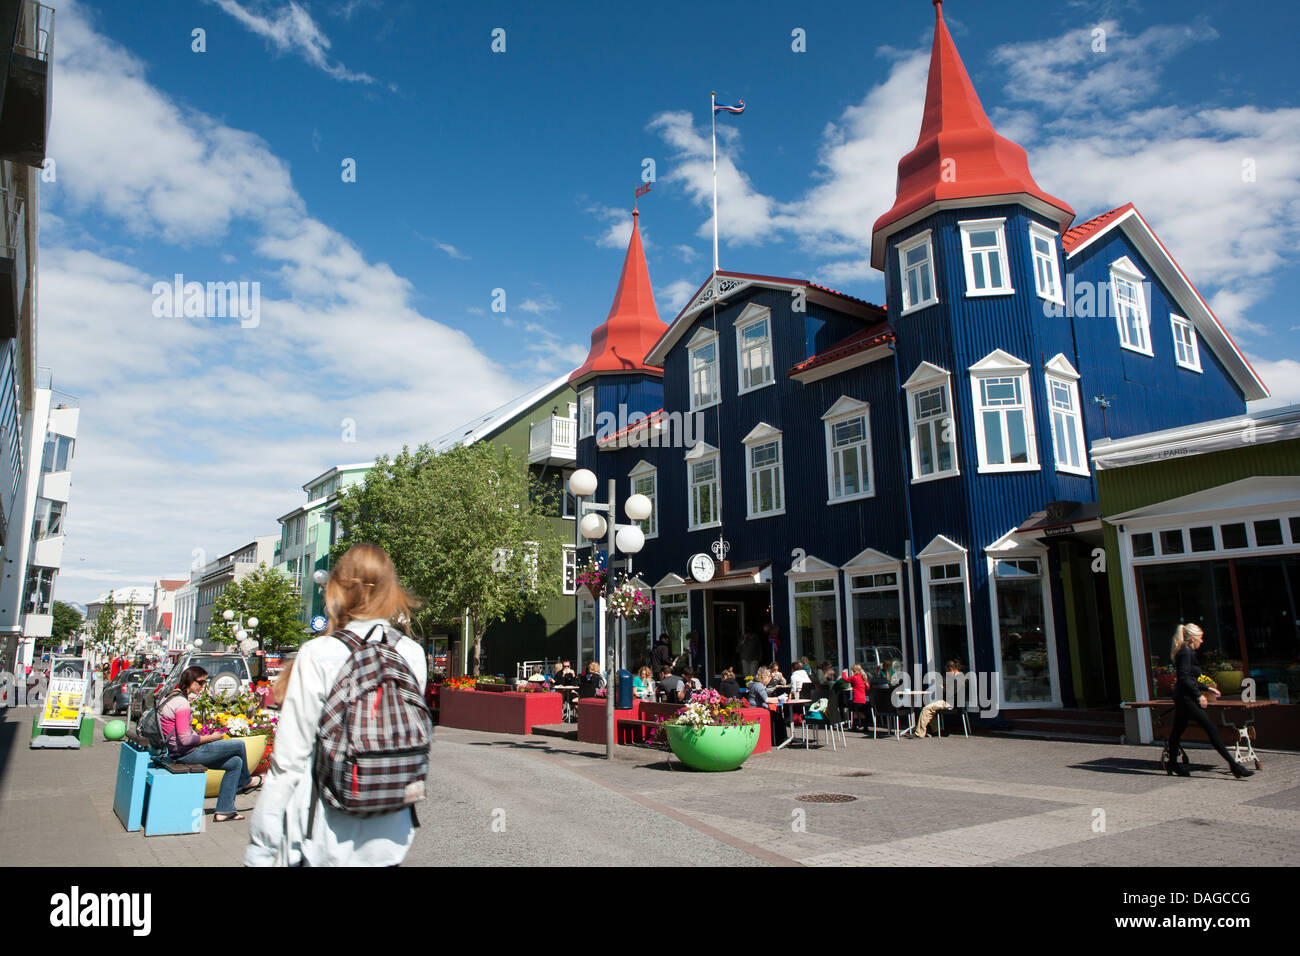 Downtown Akureyri - Northern Iceland Stock Photo